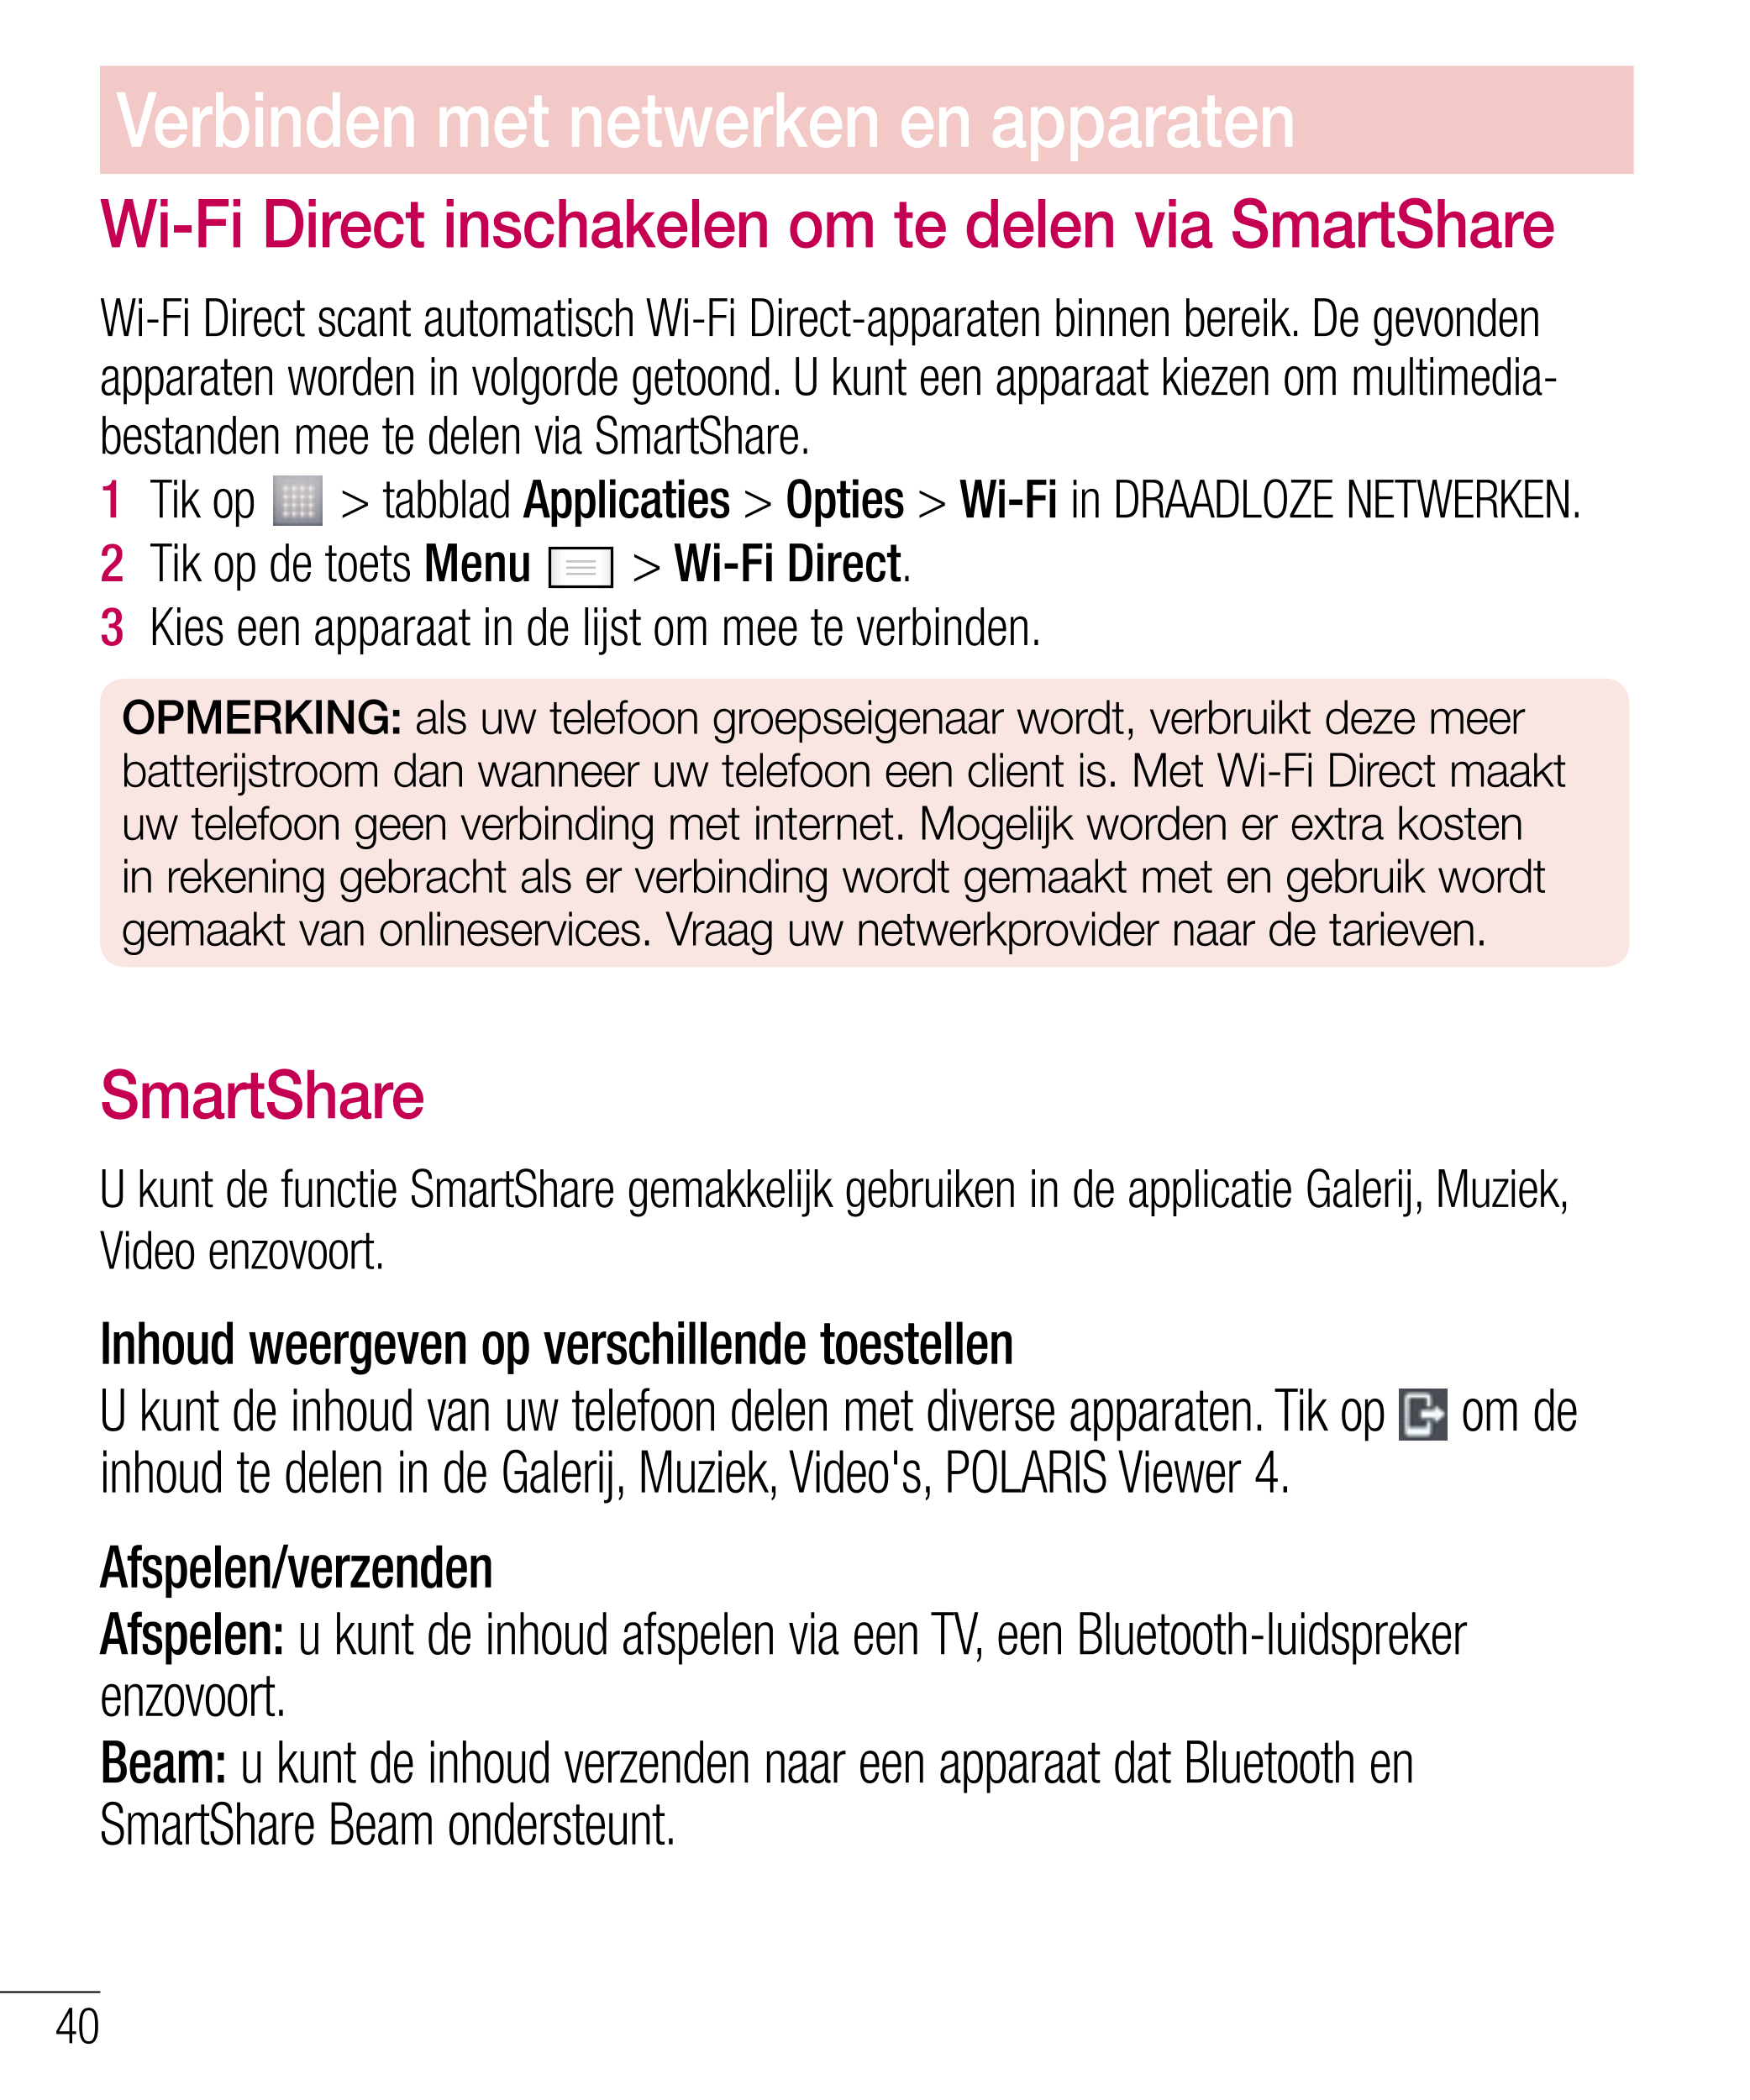 Verbinden met netwerken en apparaten
Wi-Fi Direct inschakelen om te delen via SmartShare
Wi-Fi Direct scant automatisch Wi-Fi Di